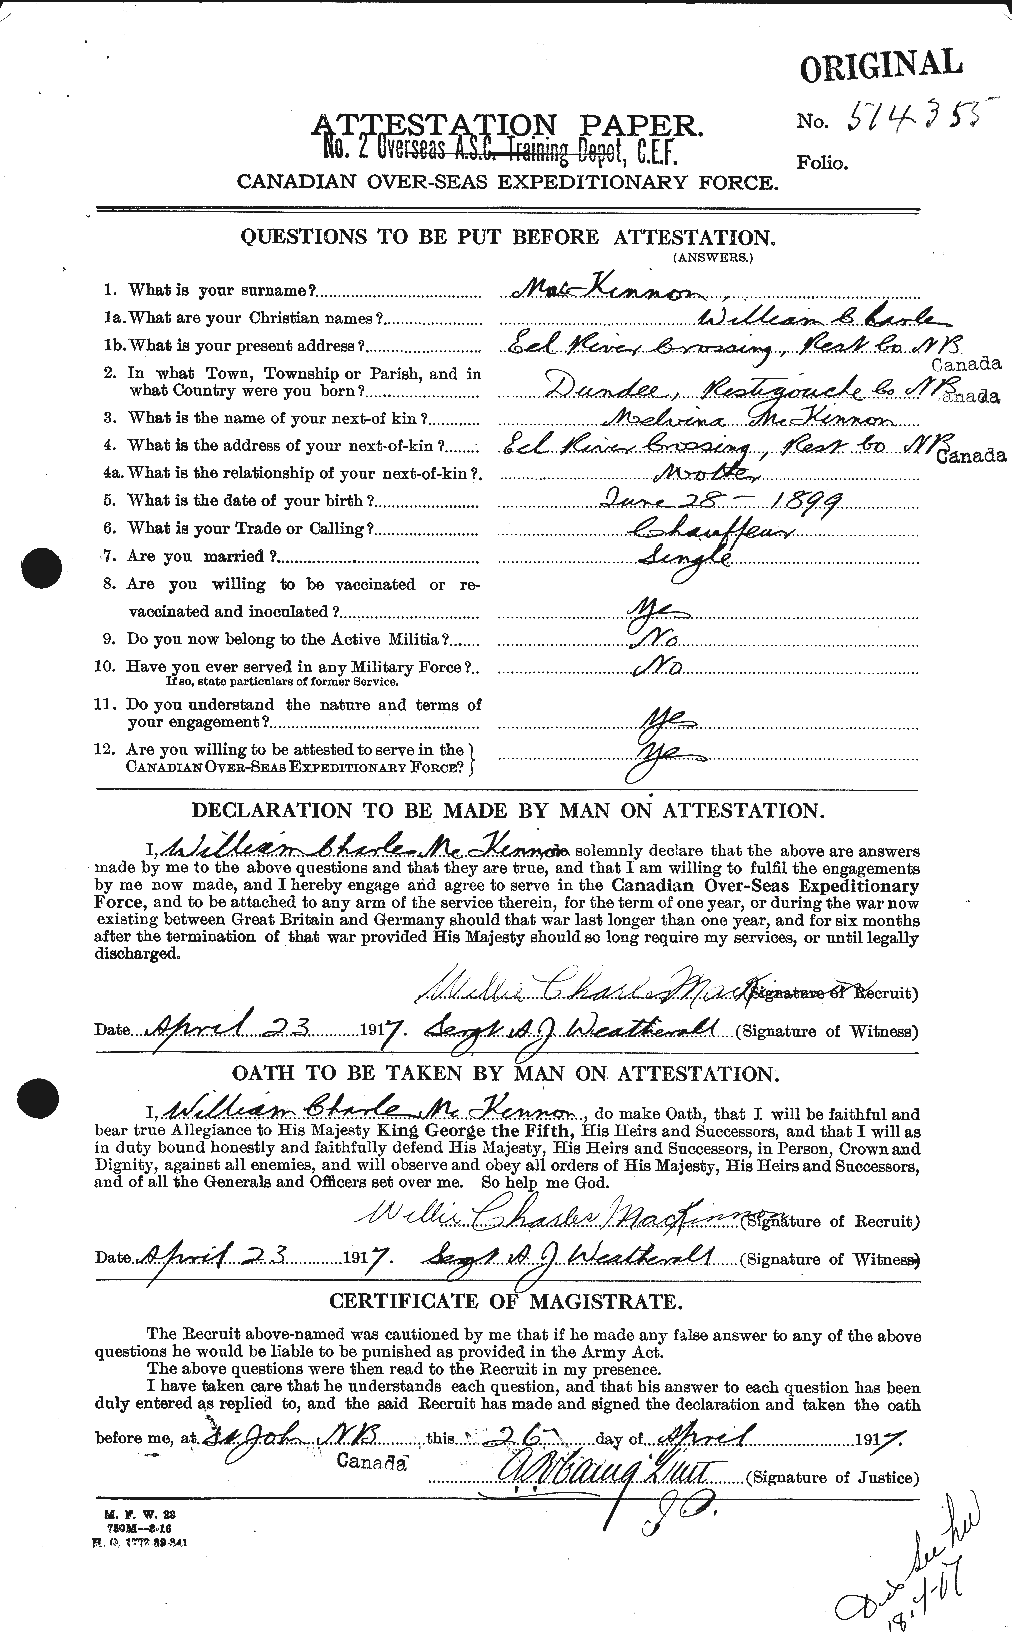 Dossiers du Personnel de la Première Guerre mondiale - CEC 534318a